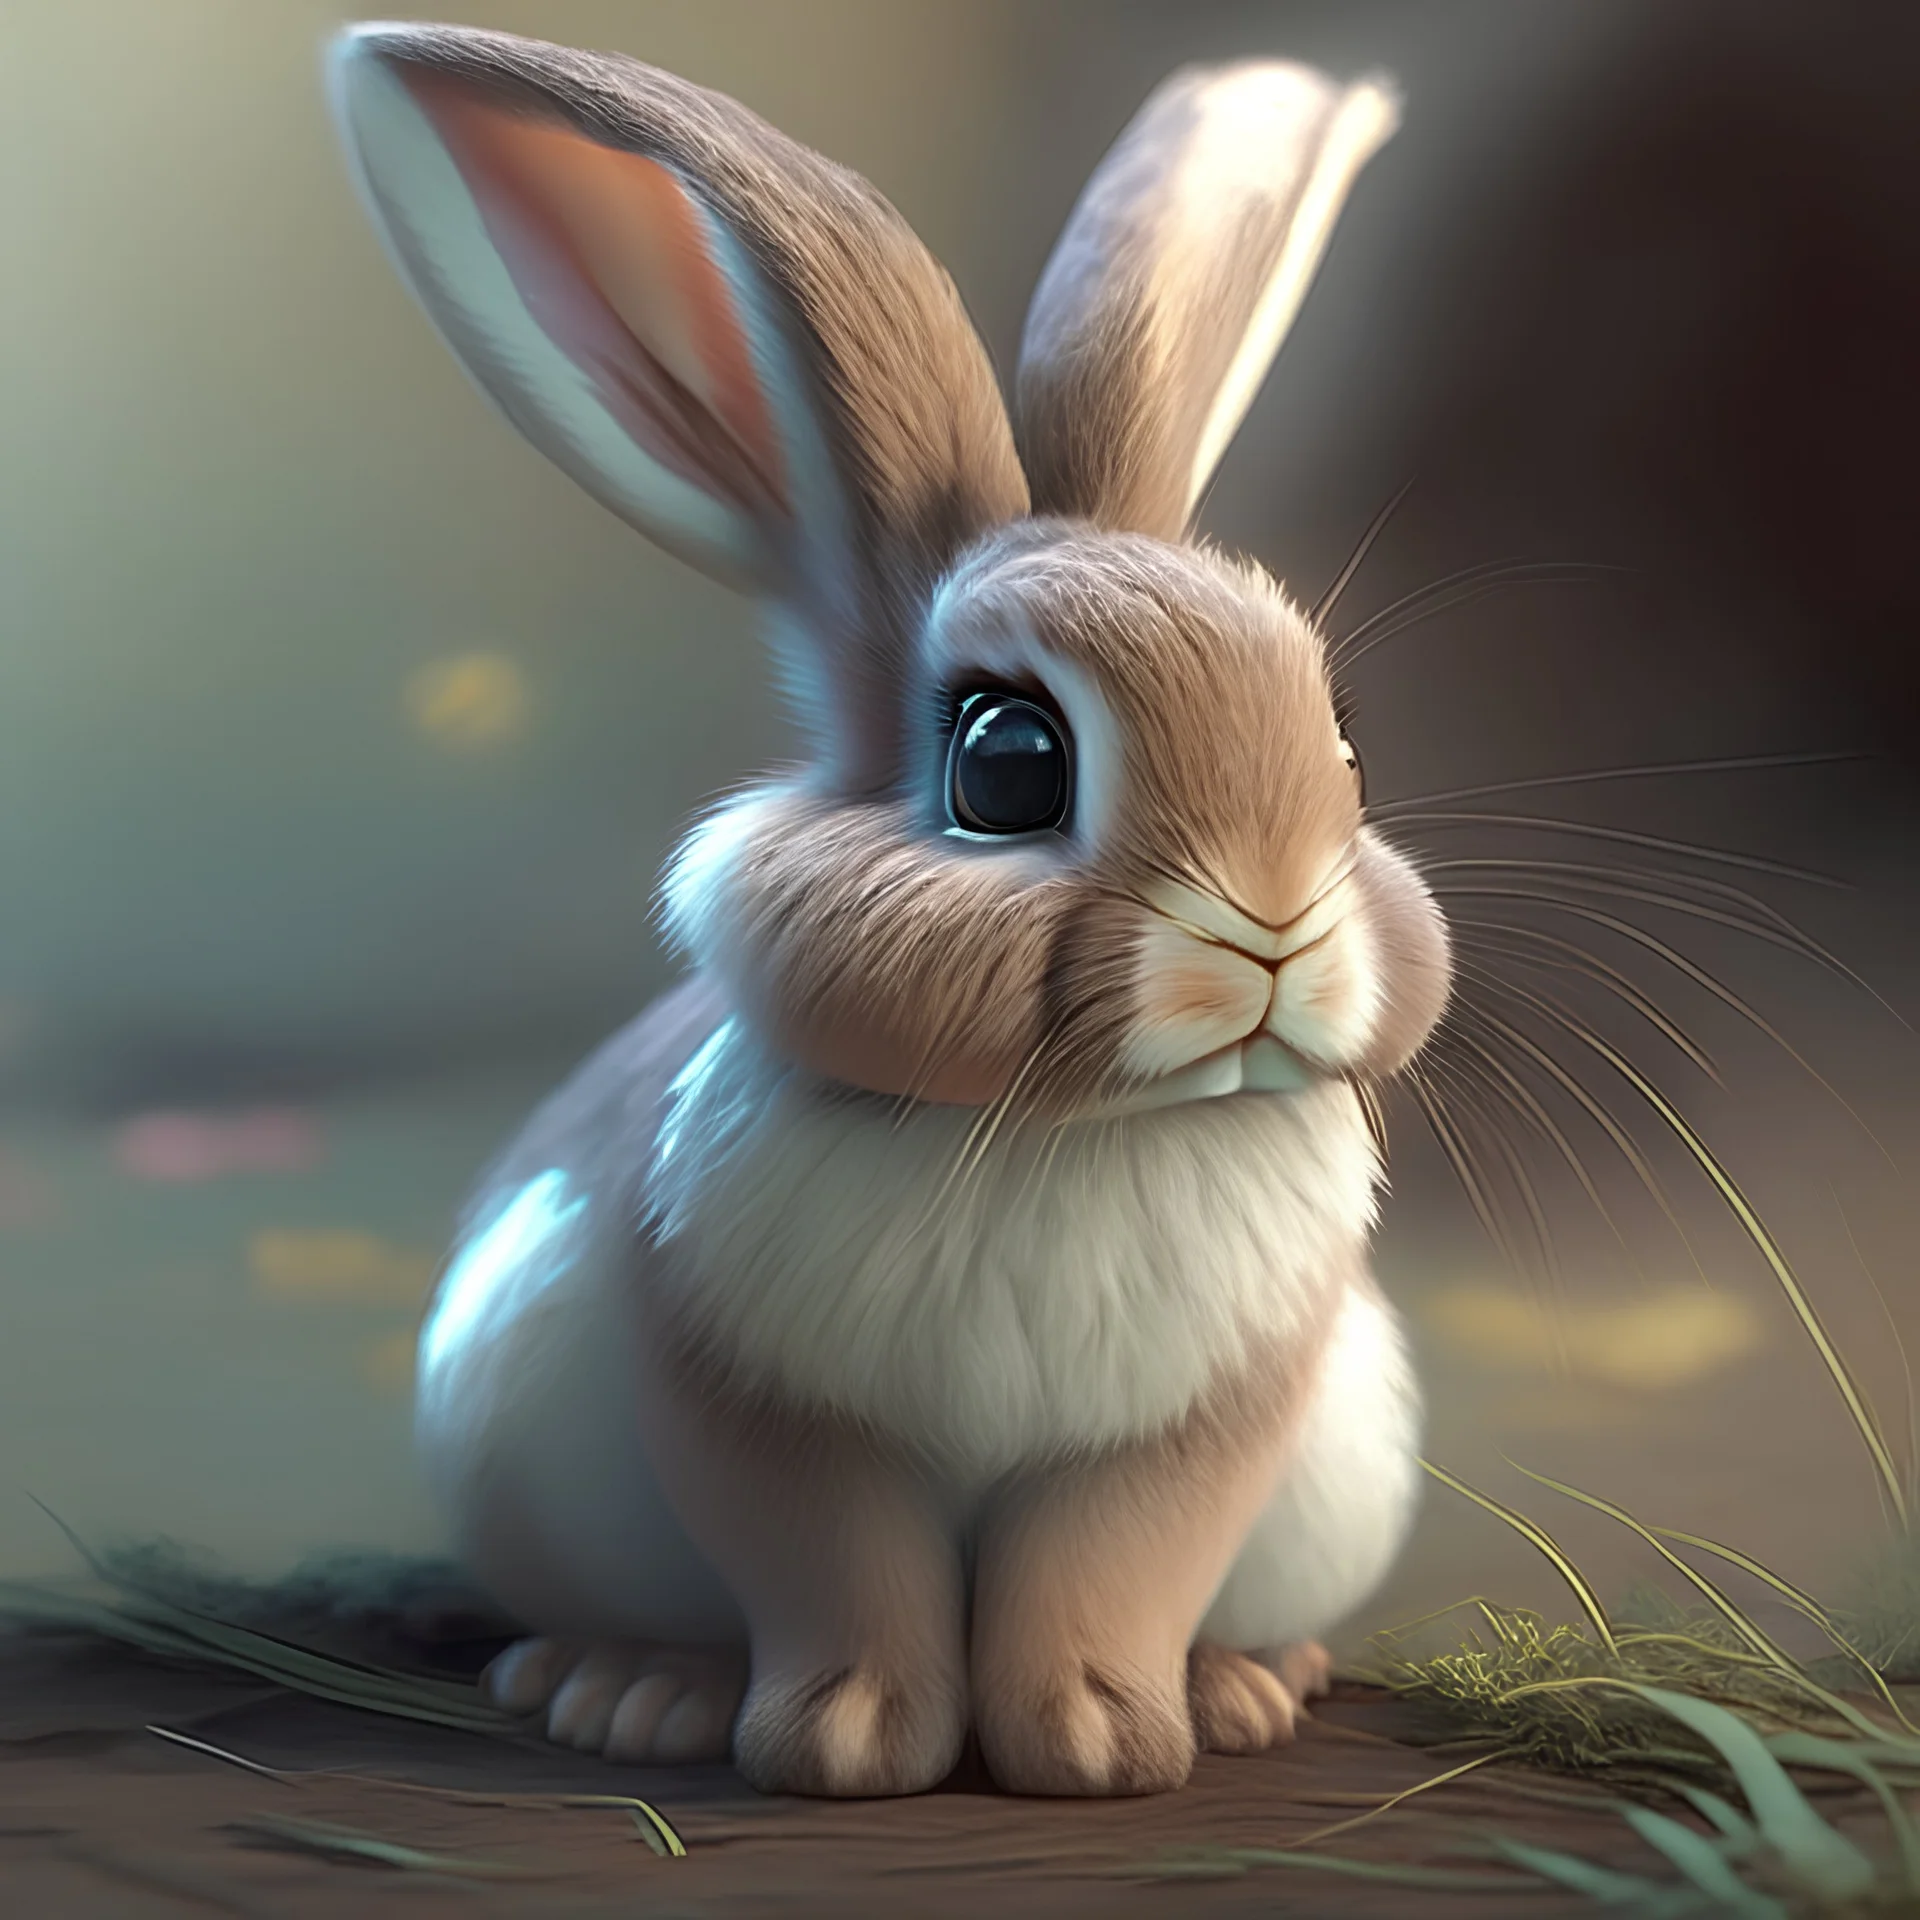 A cute rabbit, avatar